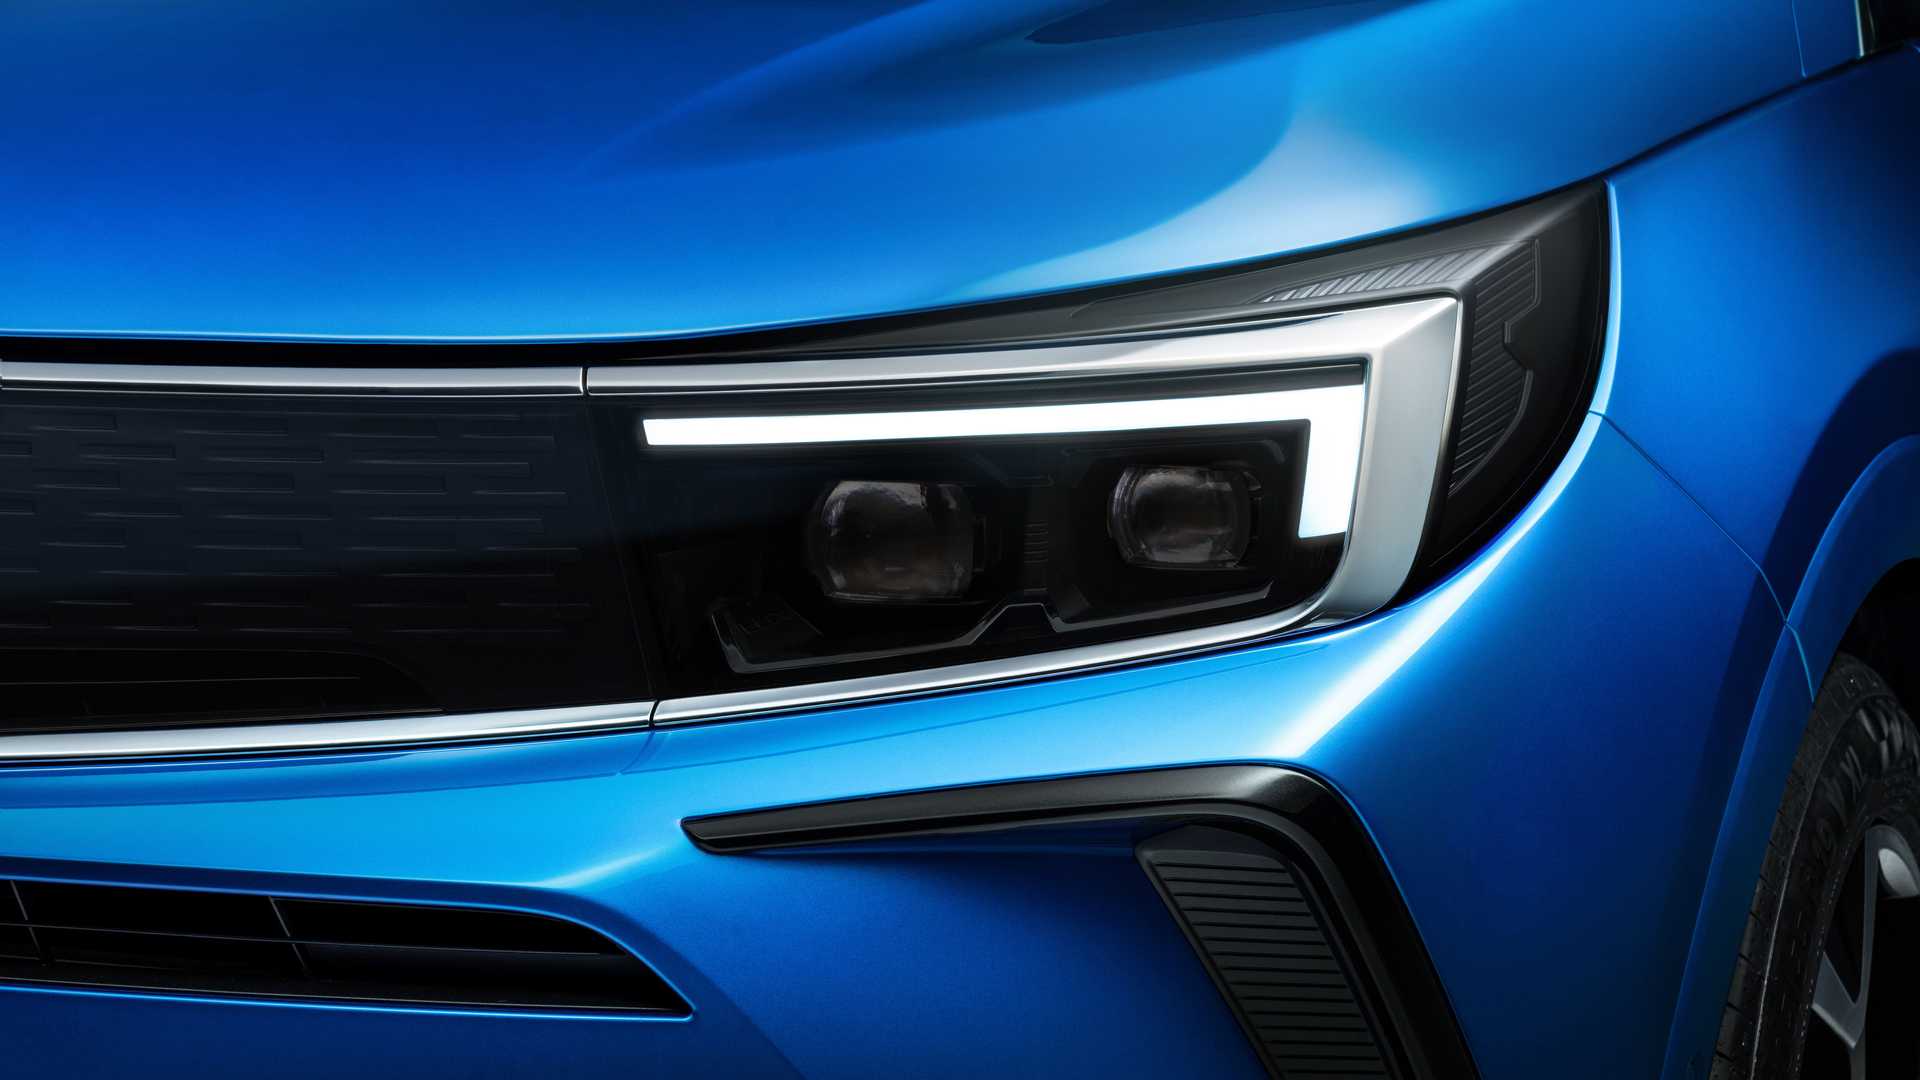 چراغ جلو ماتریسی فیس لیفت کراس اور اوپل گرندلند 2022 / 2022 Opel Grandland crossover آبی رنگ